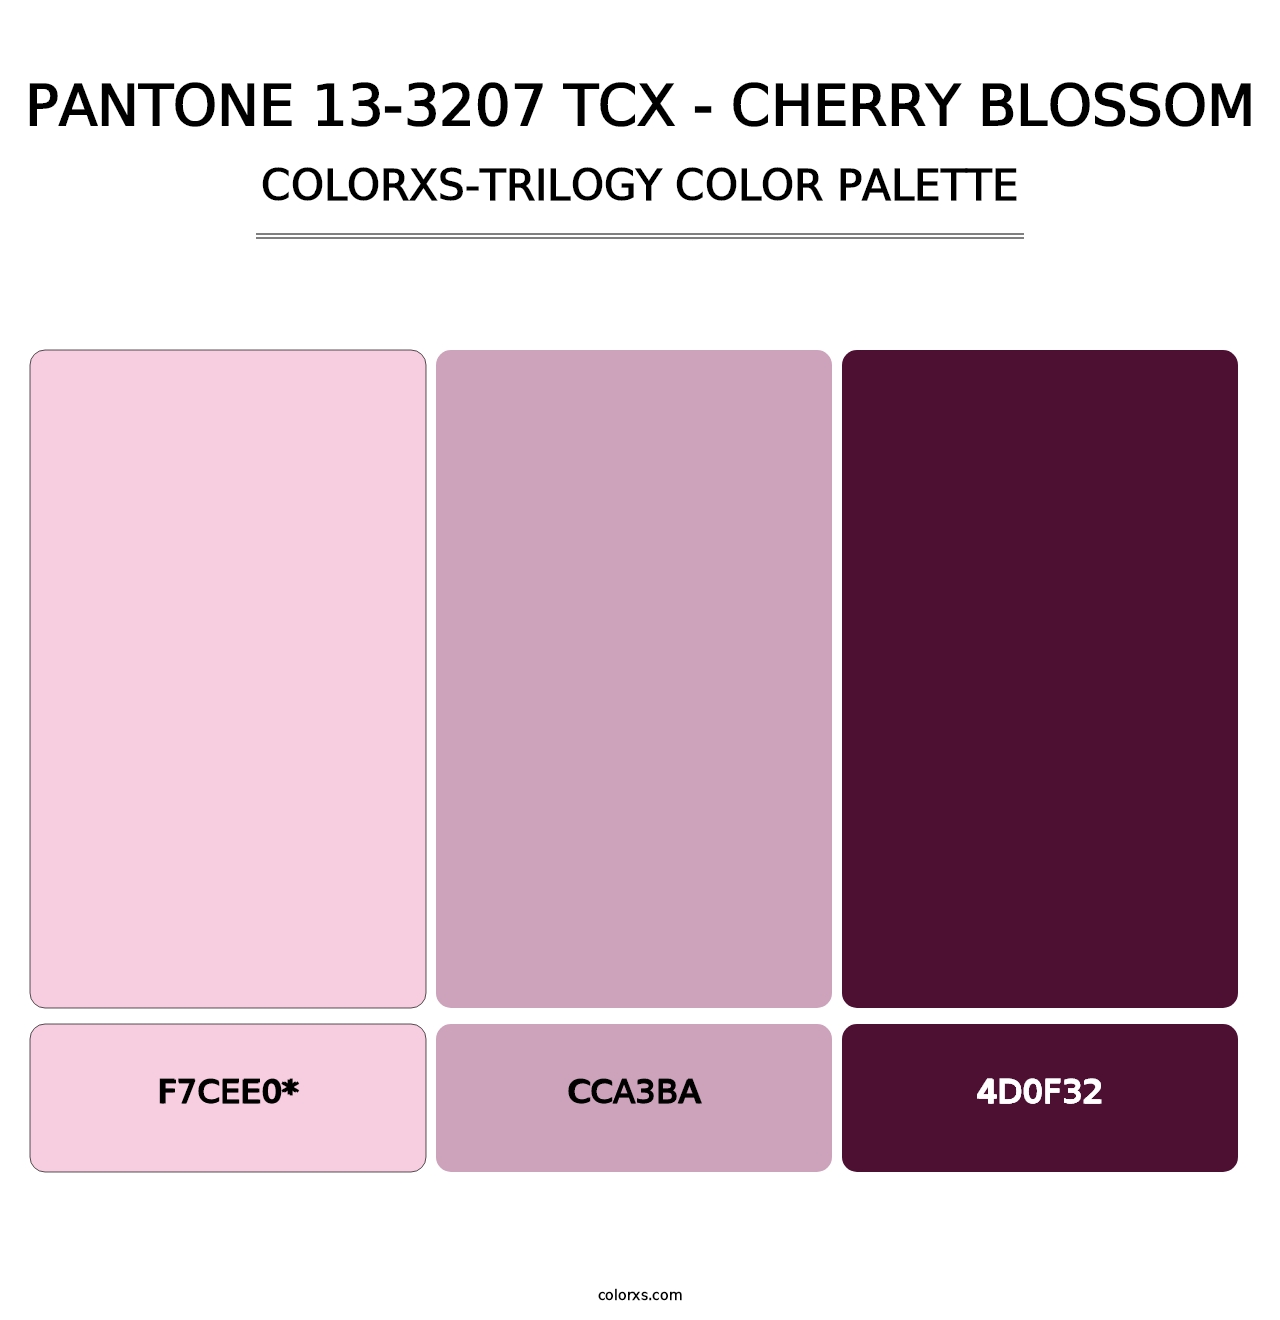 PANTONE 13-3207 TCX - Cherry Blossom - Colorxs Trilogy Palette